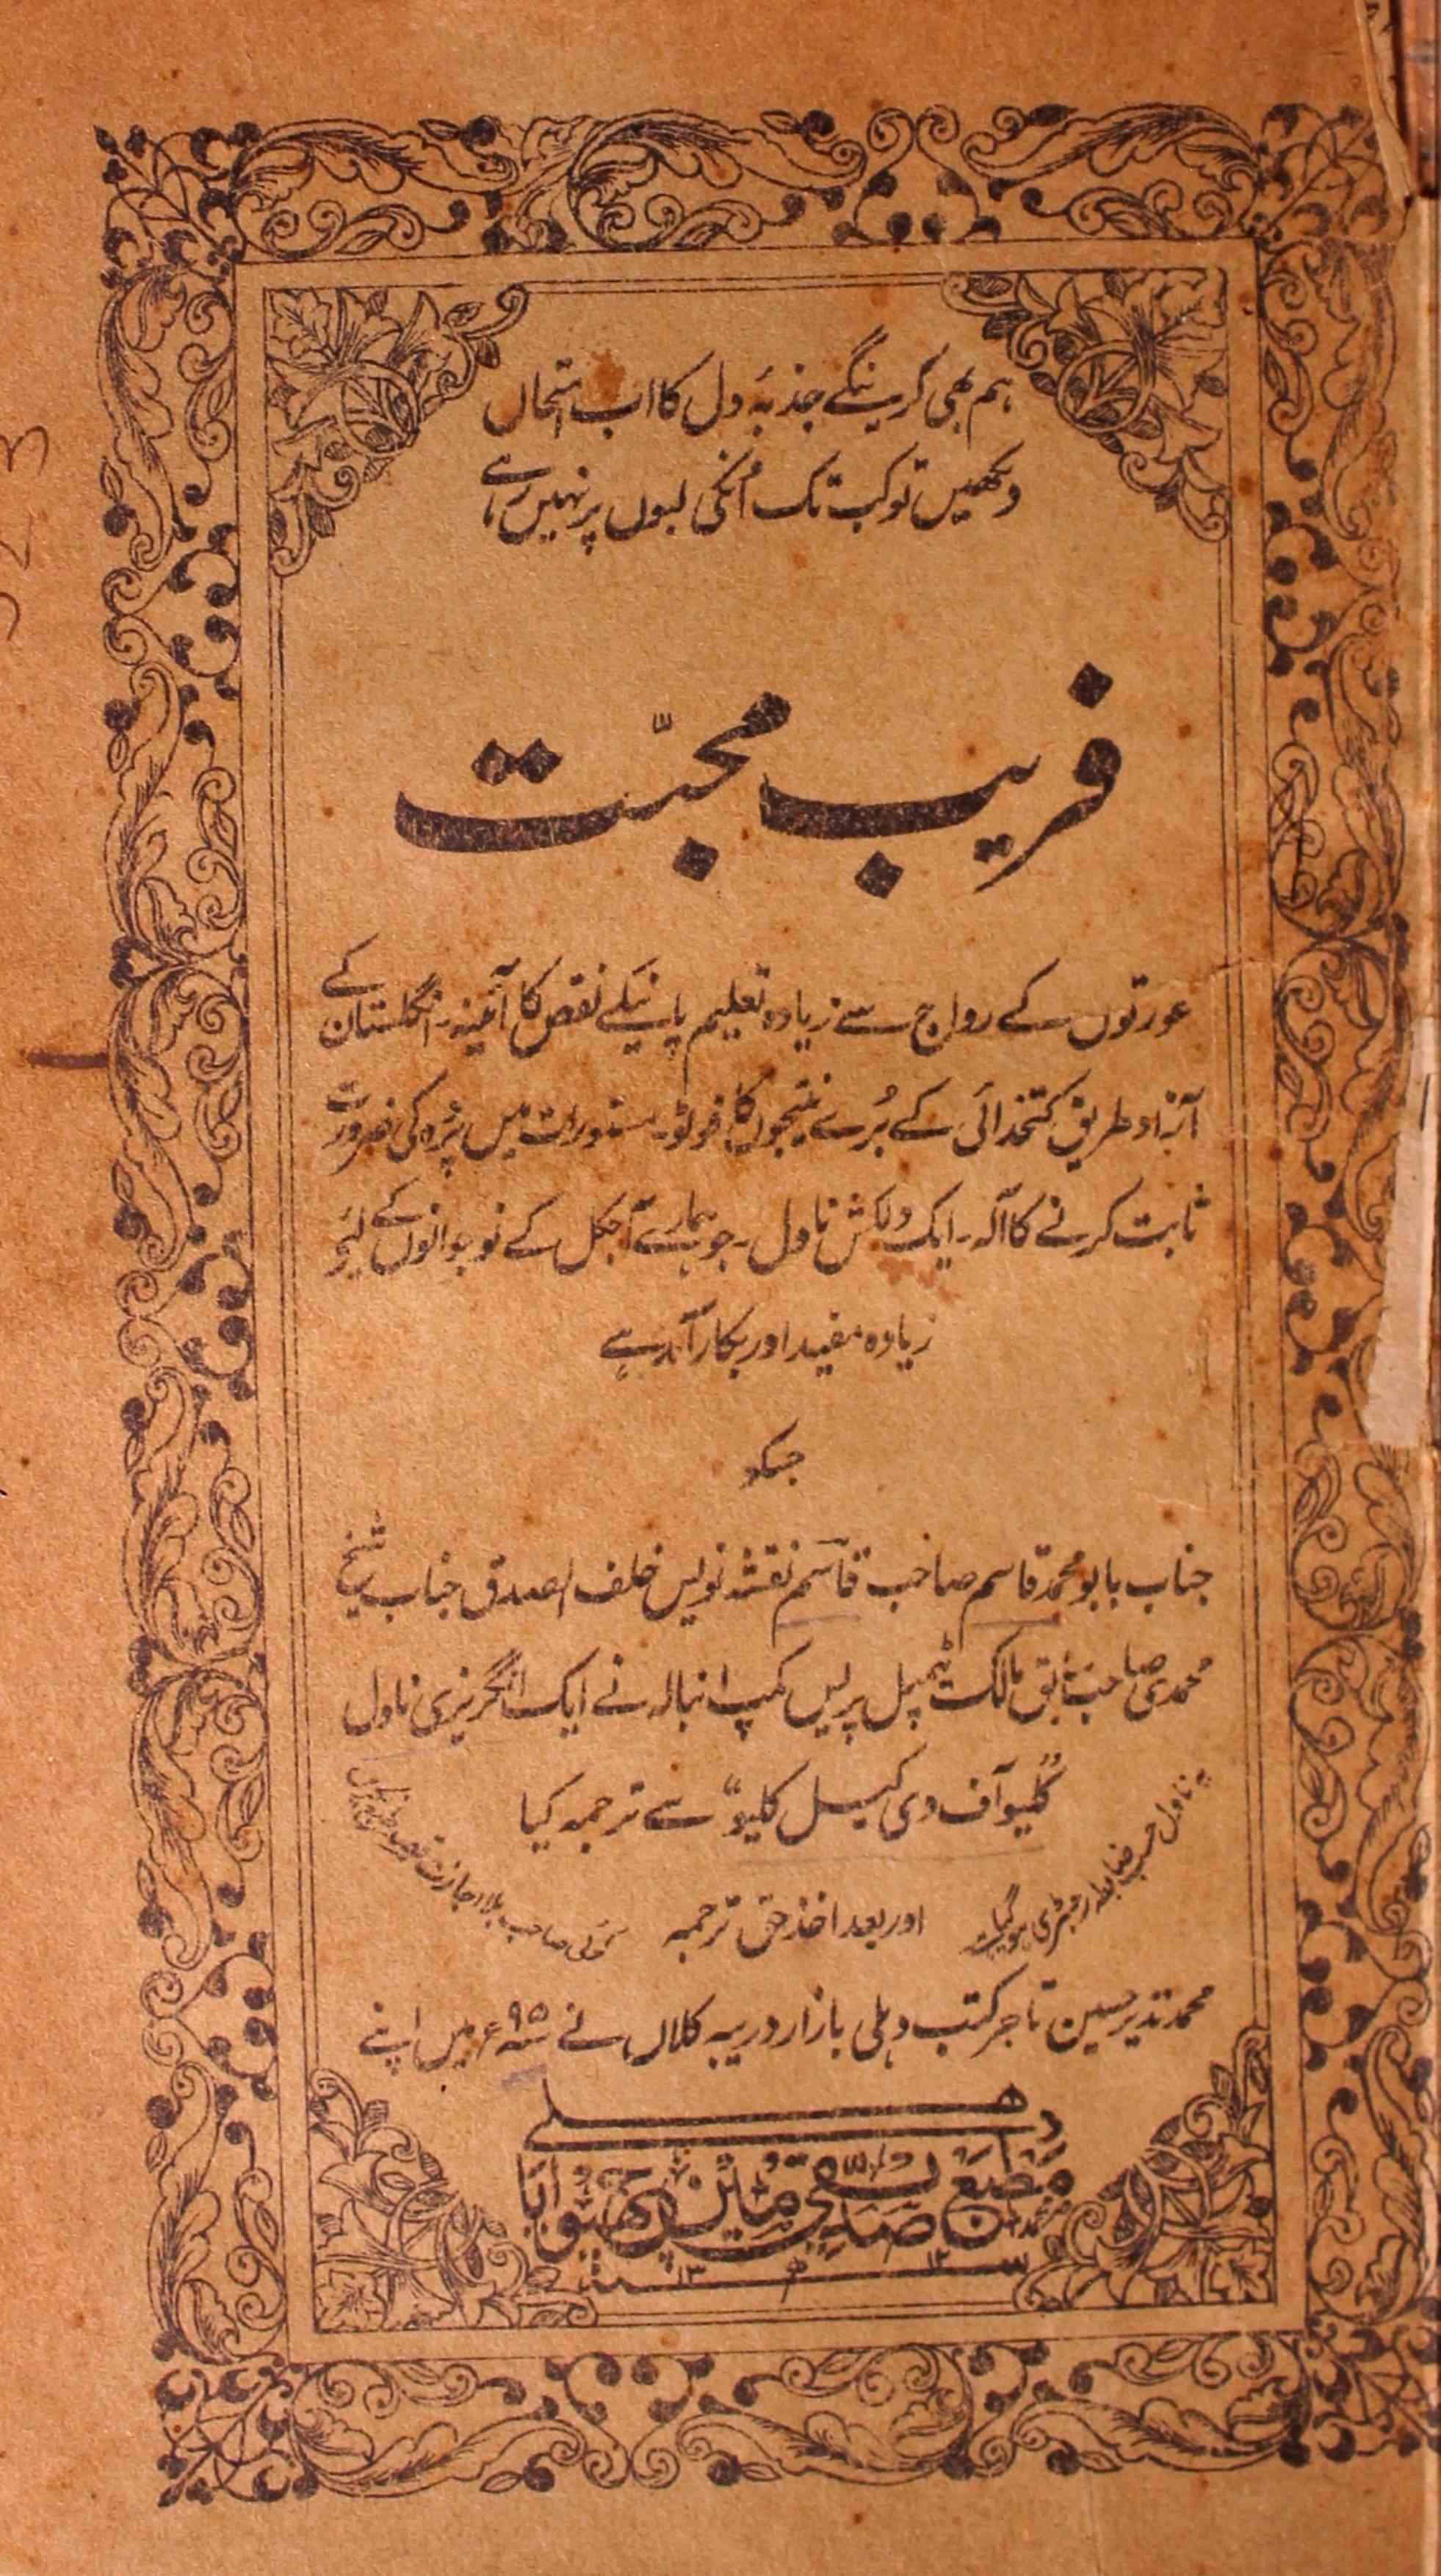 Fareb-e-Mohabbat